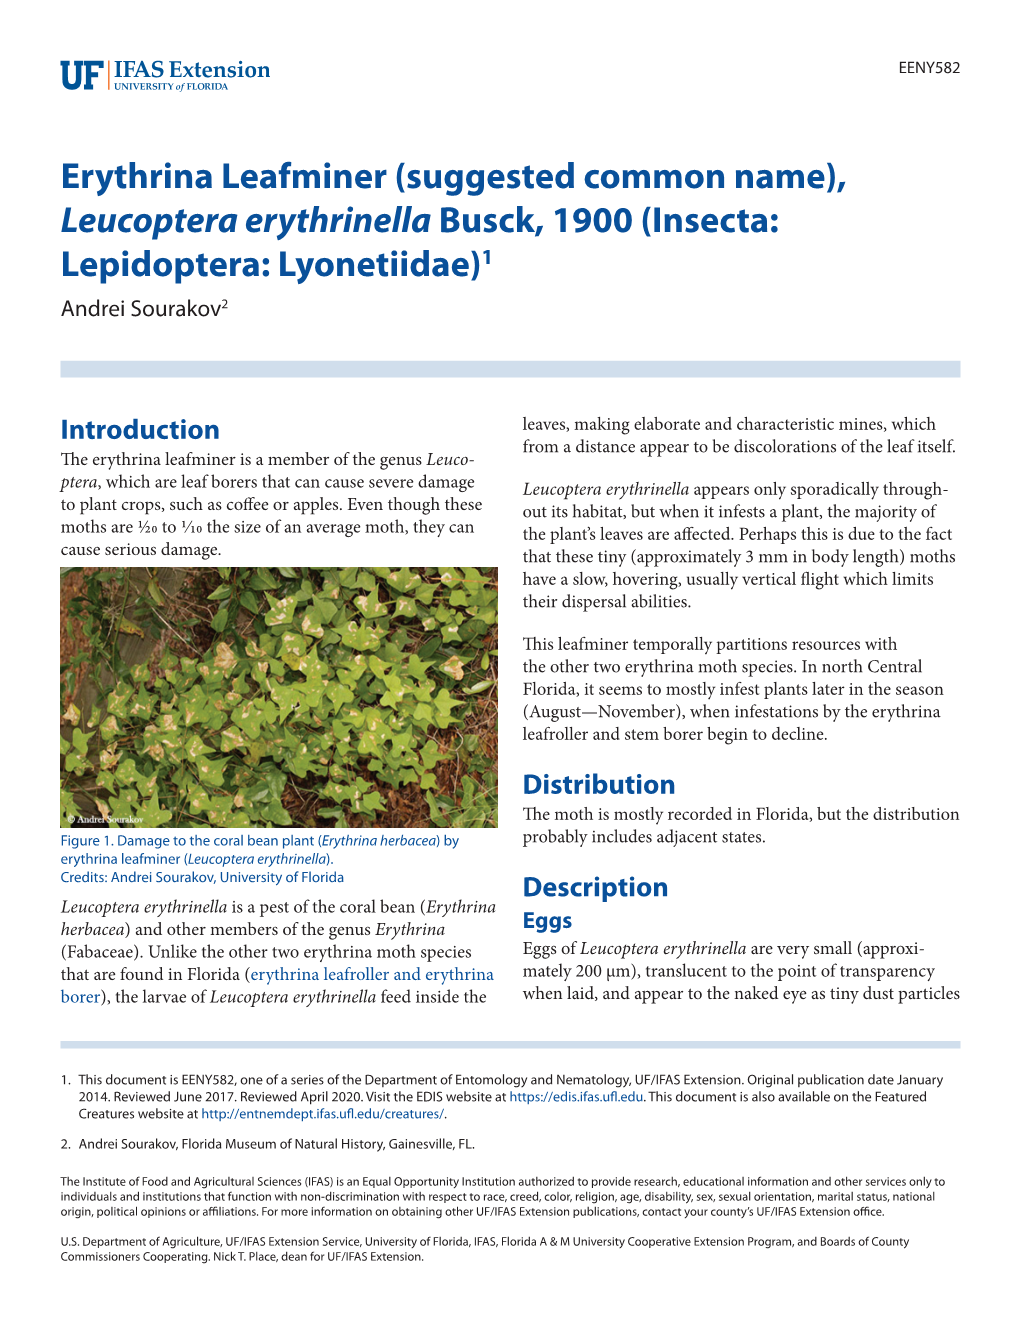 Erythrina Leafminer (Suggested Common Name), Leucoptera Erythrinella Busck, 1900 (Insecta: Lepidoptera: Lyonetiidae)1 Andrei Sourakov2